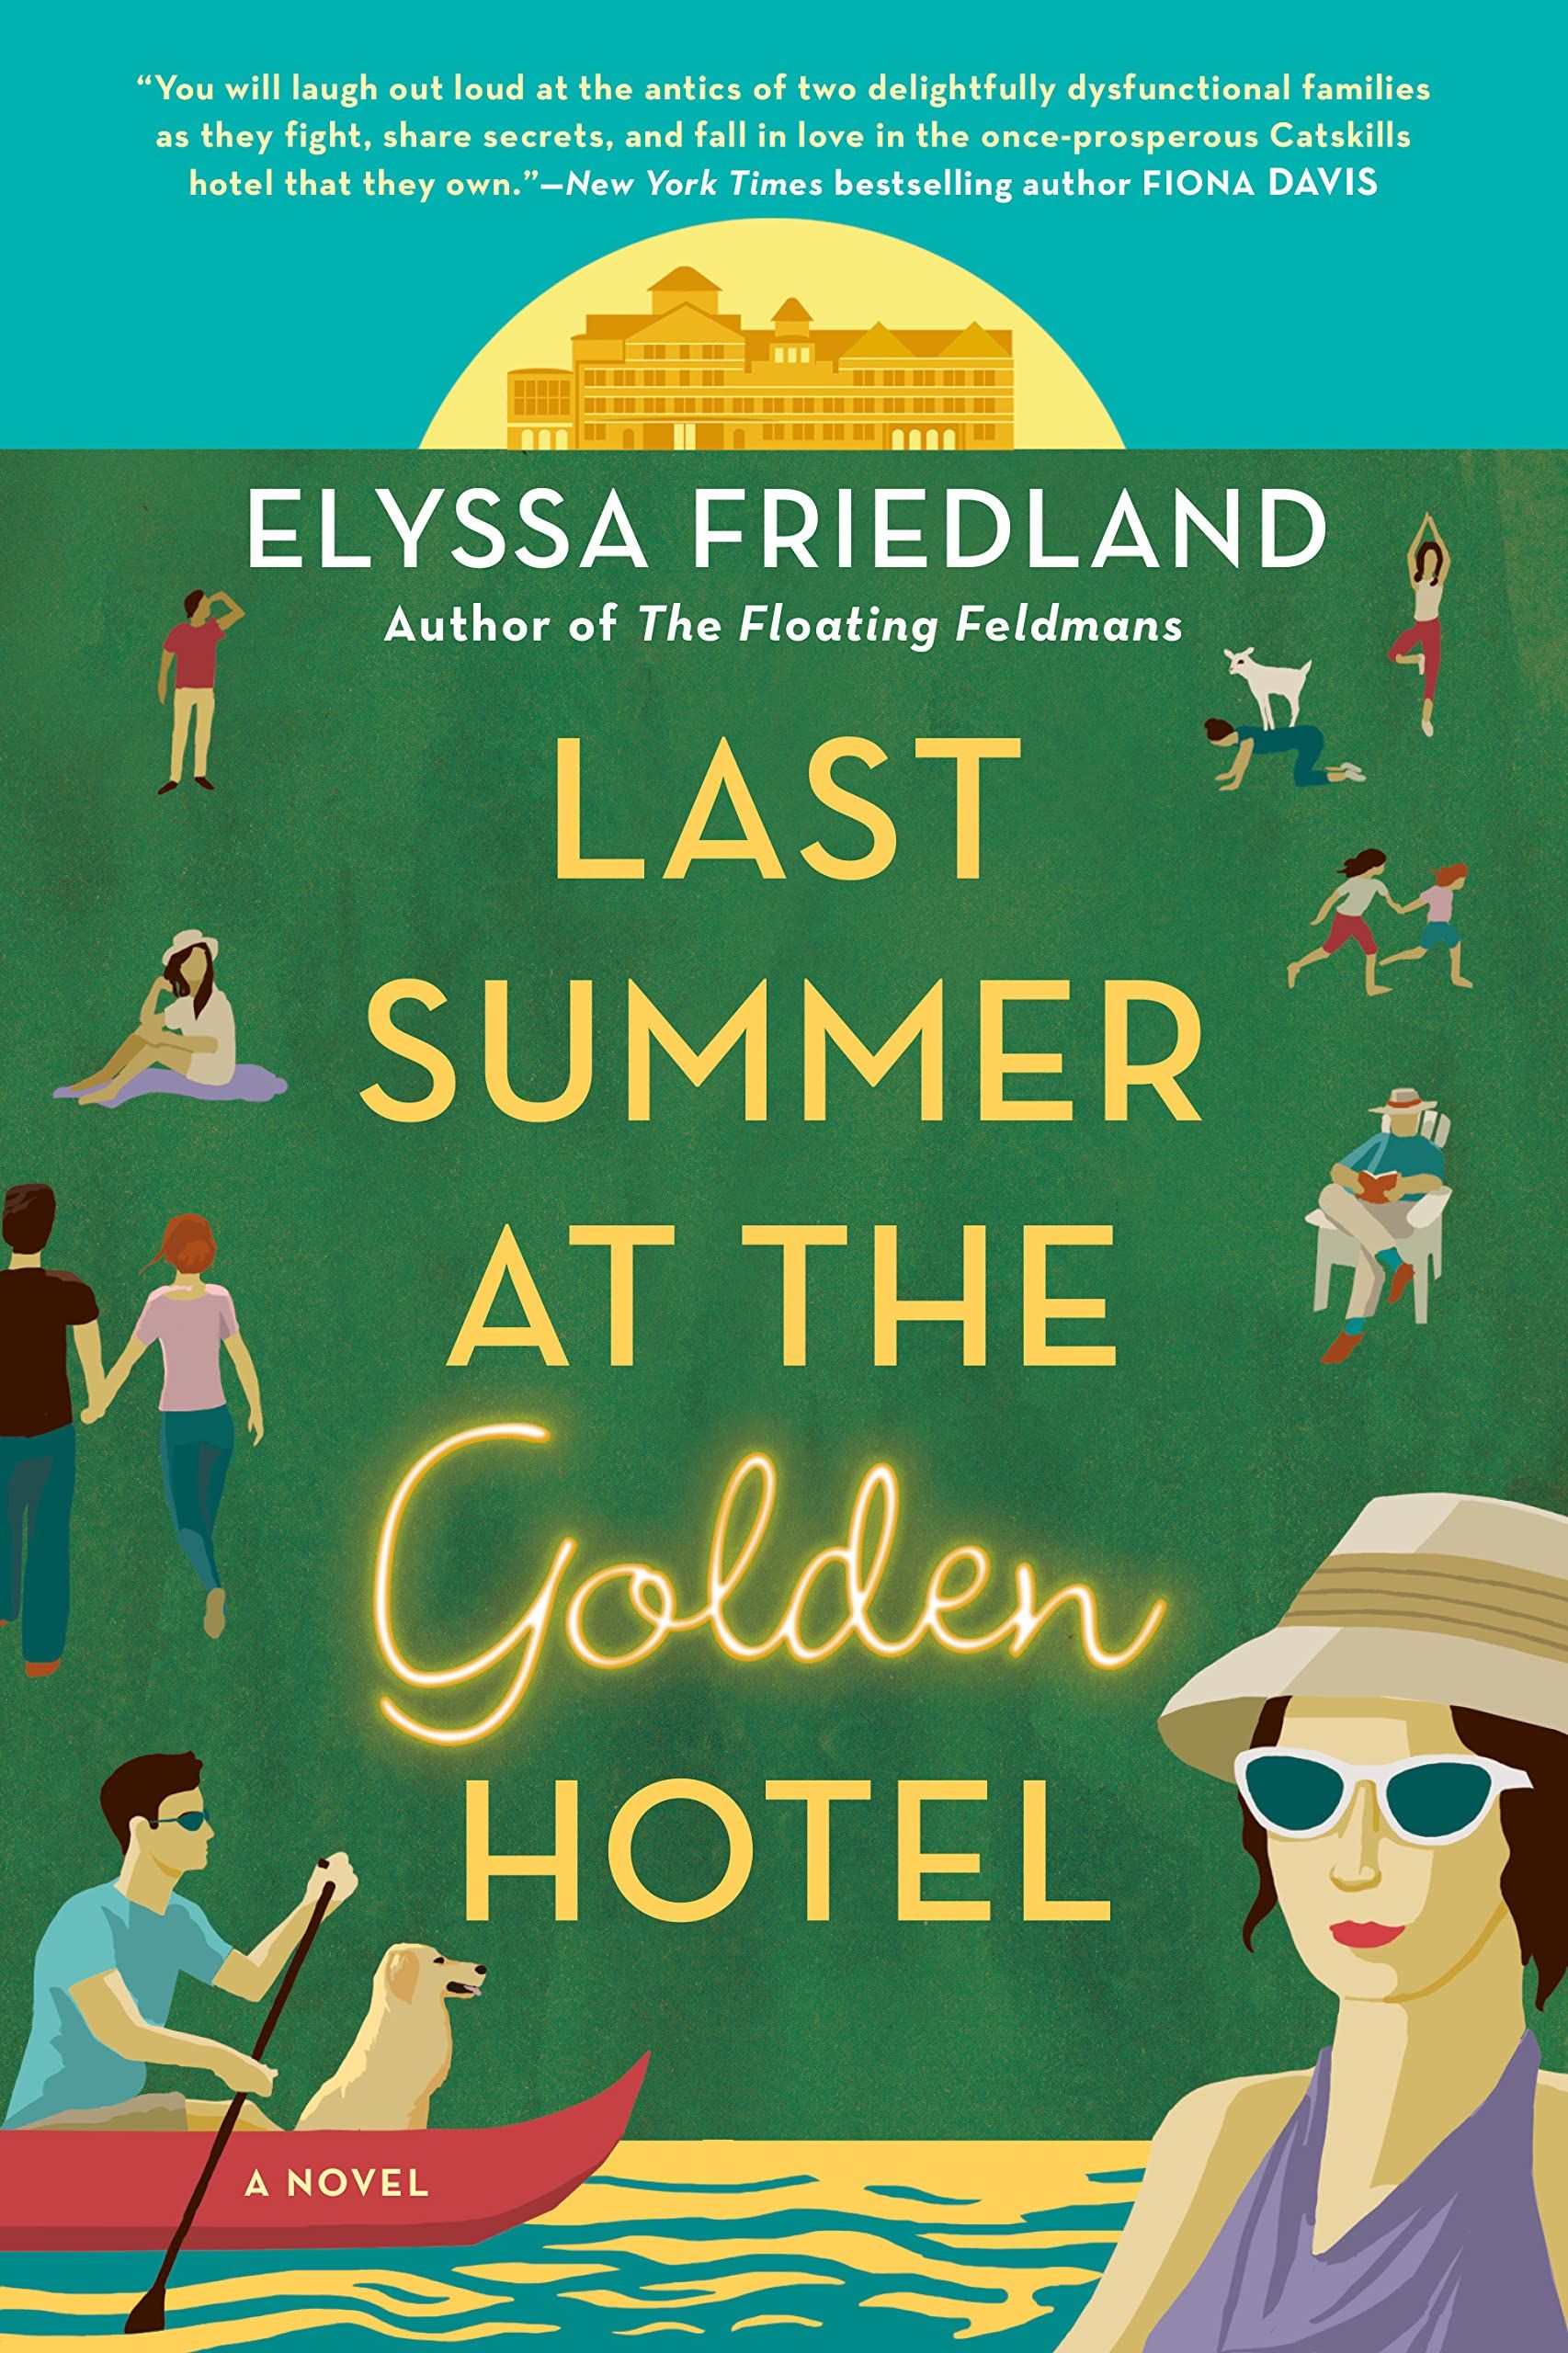 Golden Hotel kapağında geçen yaz